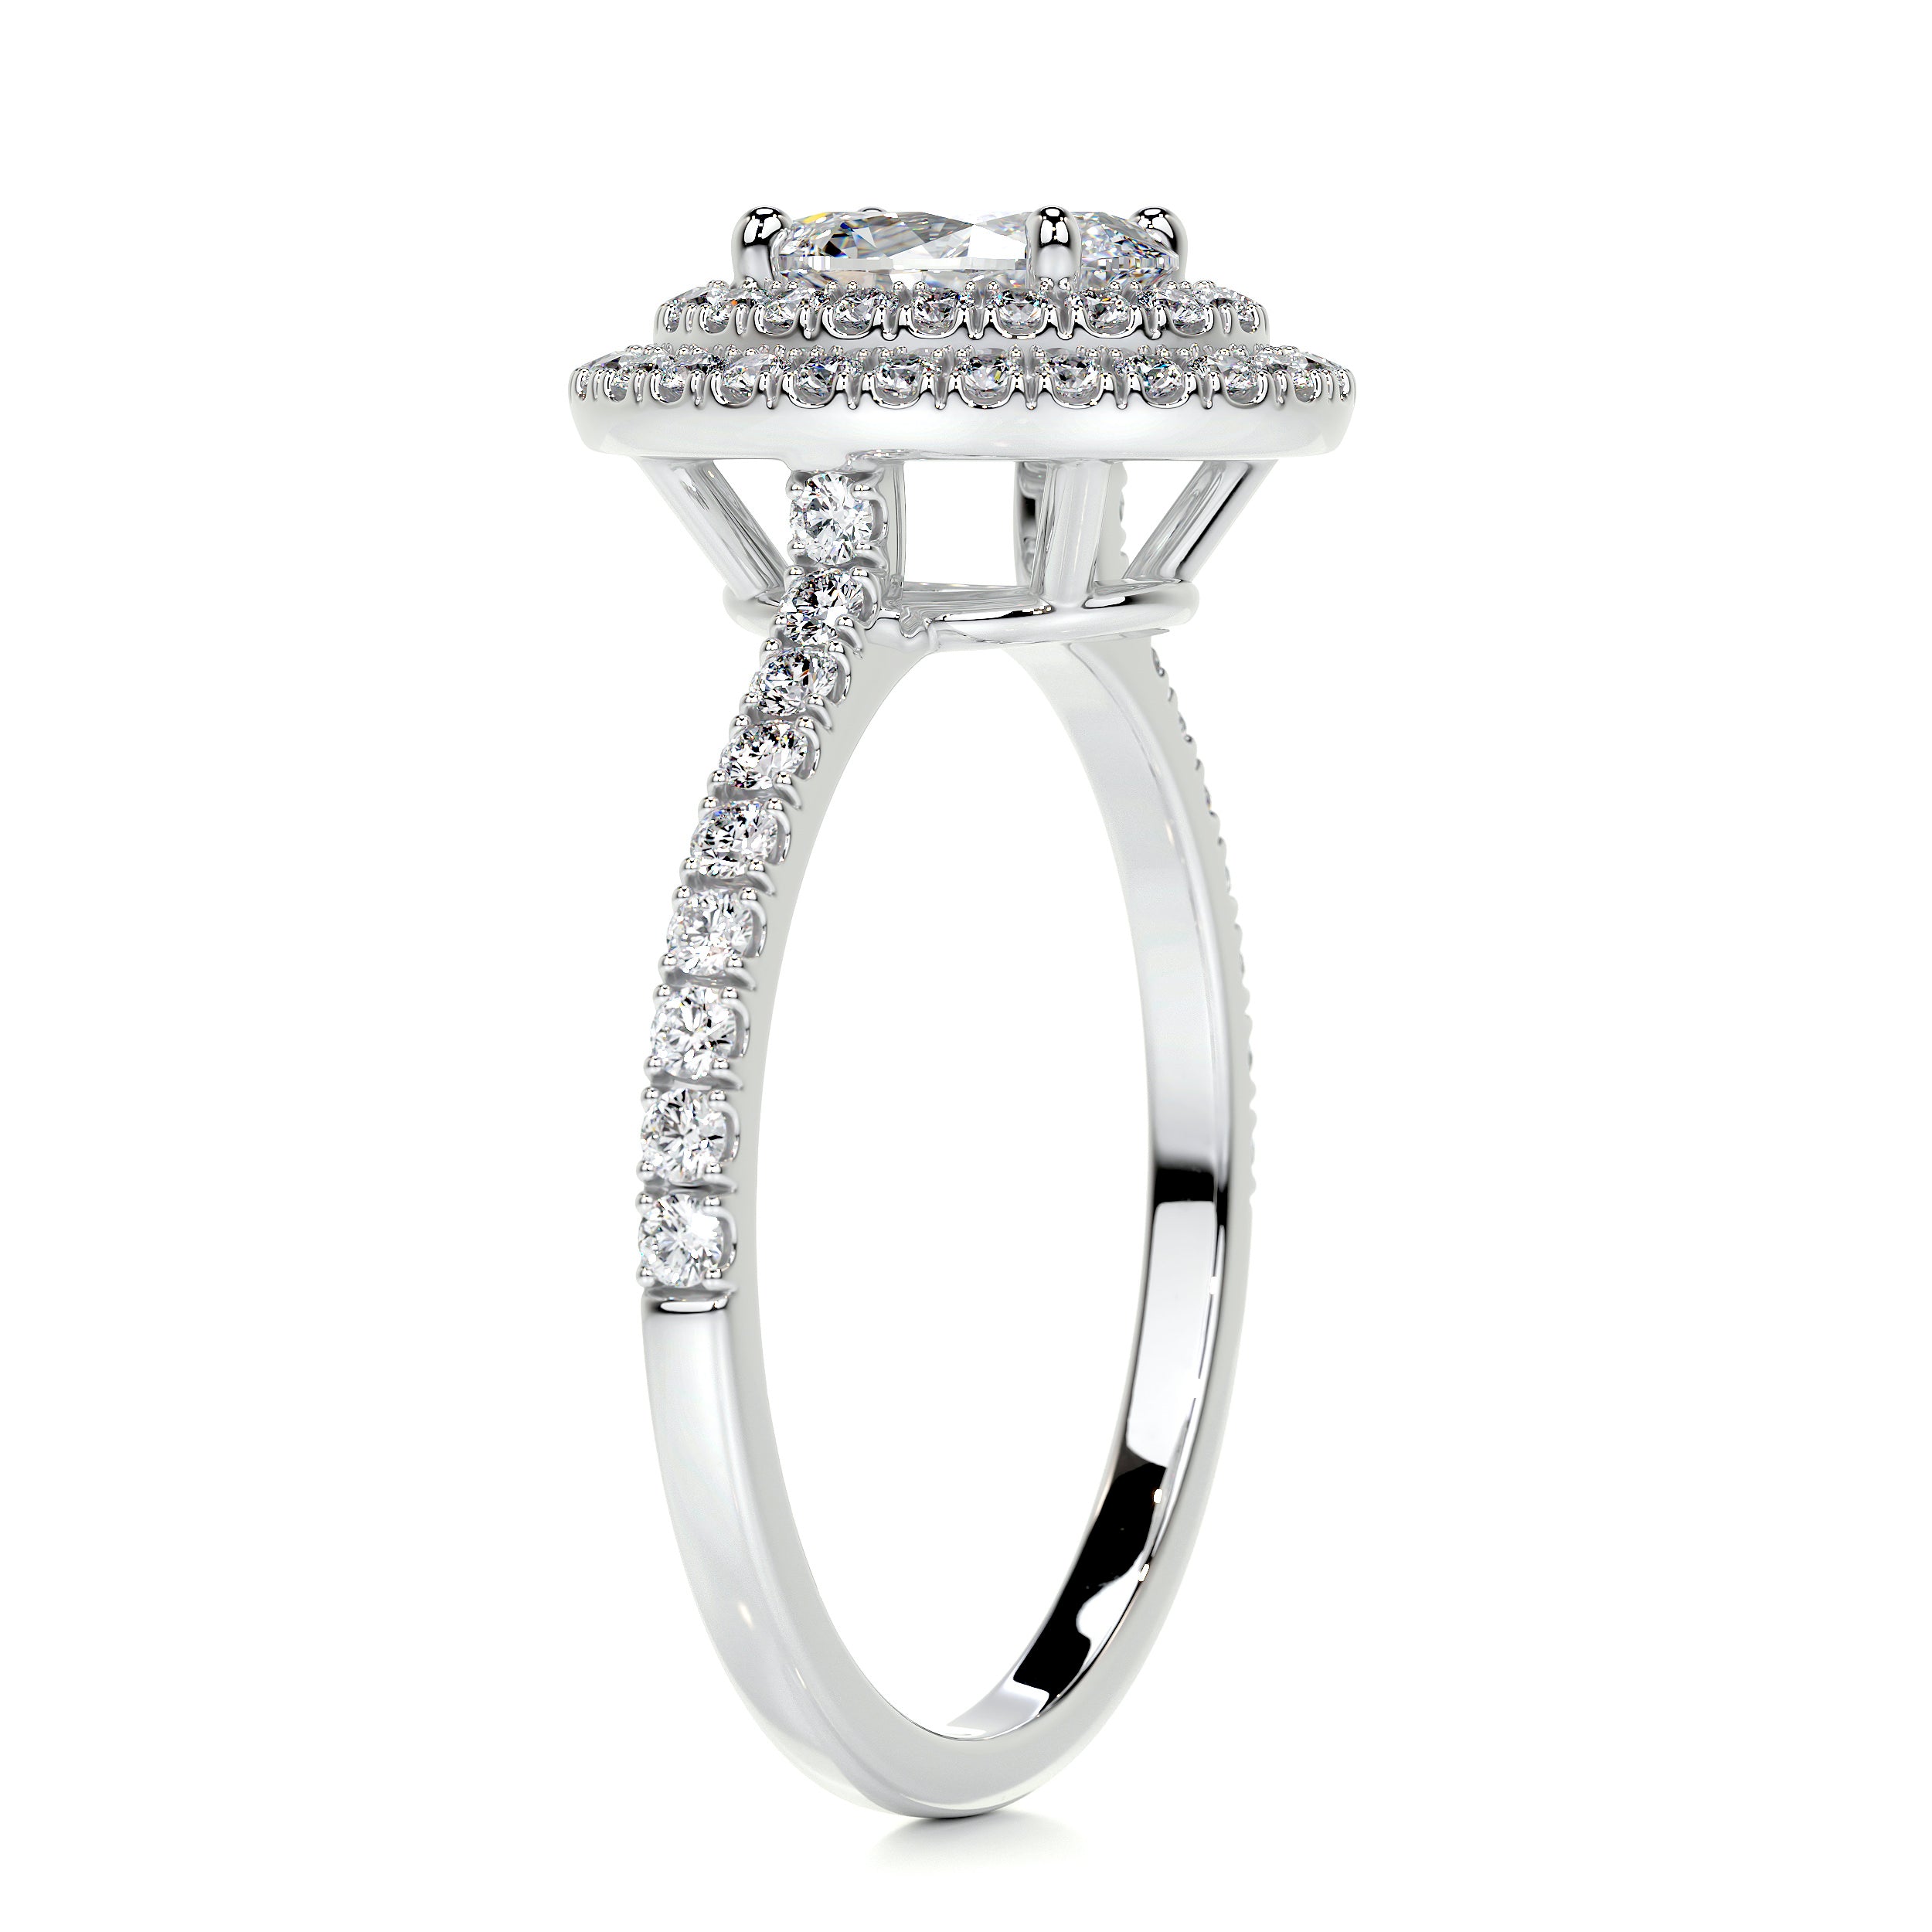 Nora Diamond Engagement Ring   (1.75 Carat) -18K White Gold